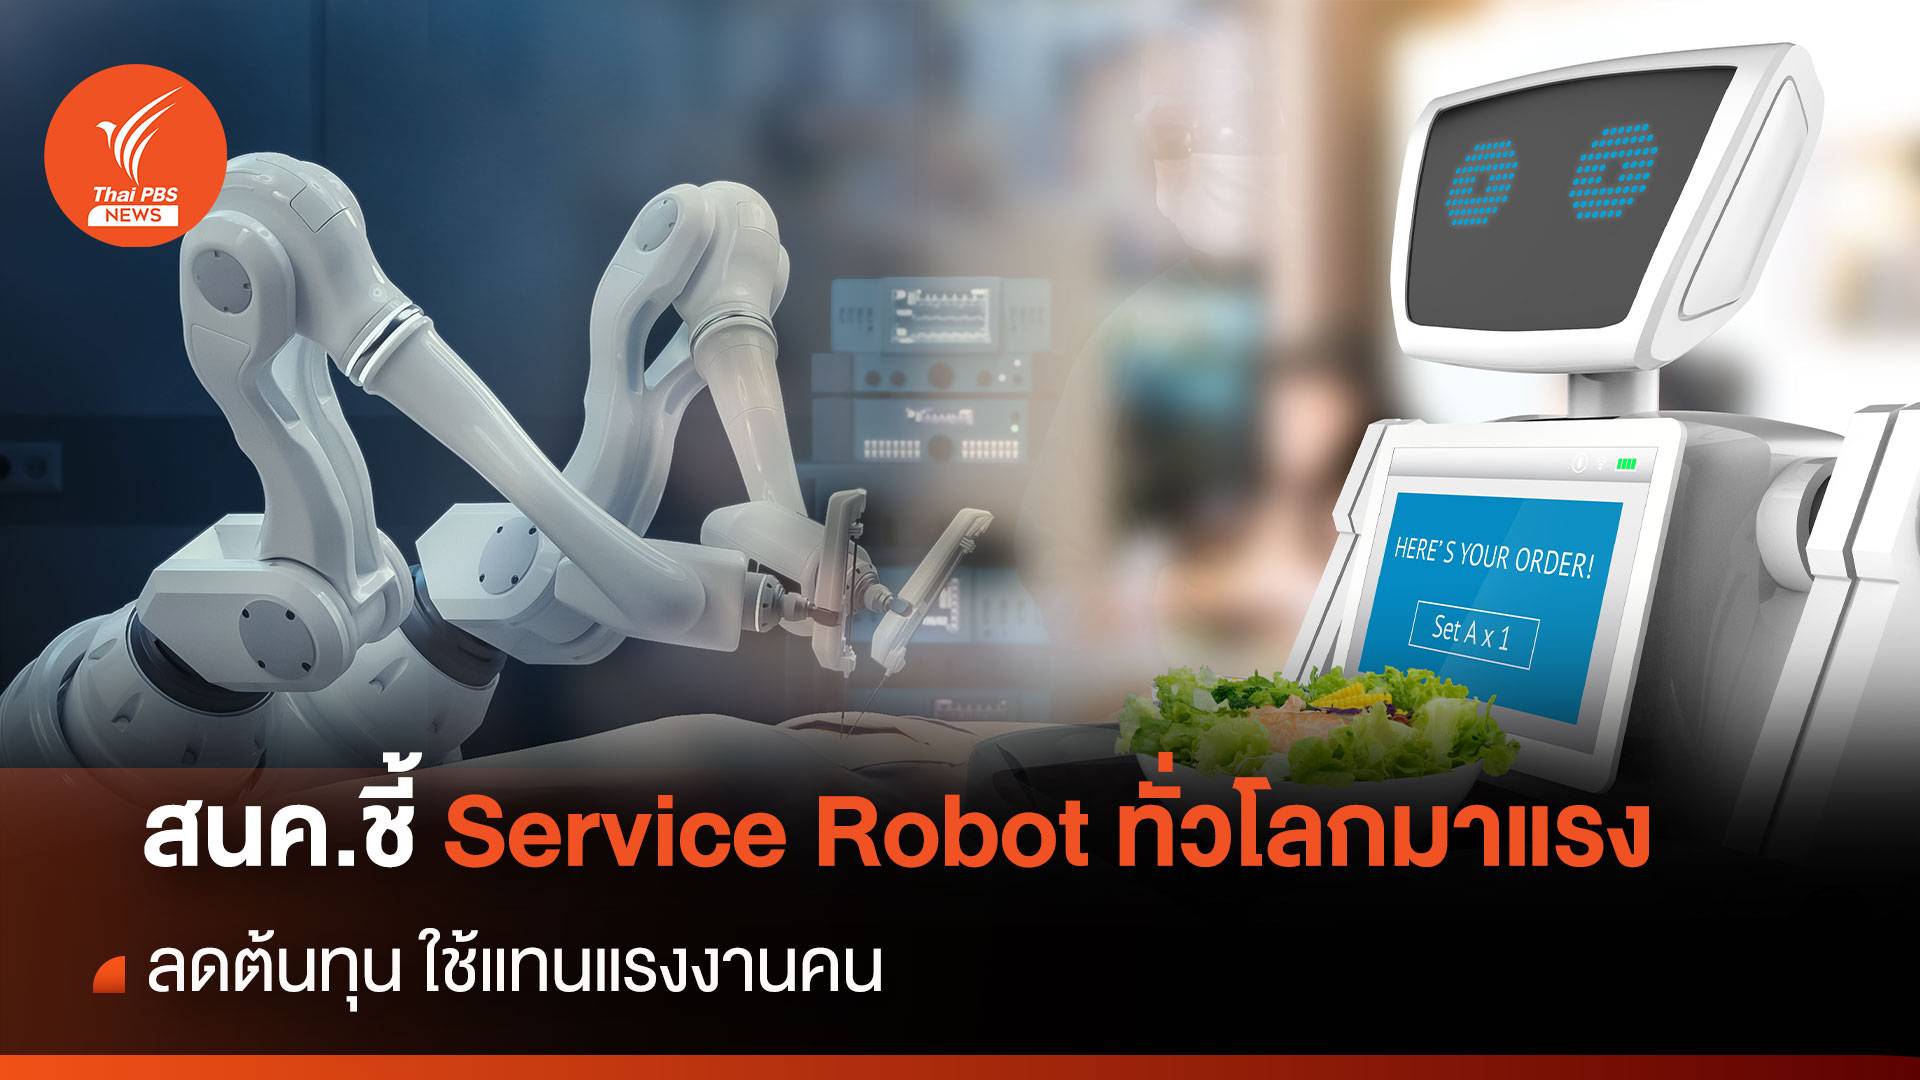 สนค.ชี้ Service Robot ทั่วโลกมาแรง ลดต้นทุน ใช้แทนแรงงานคน